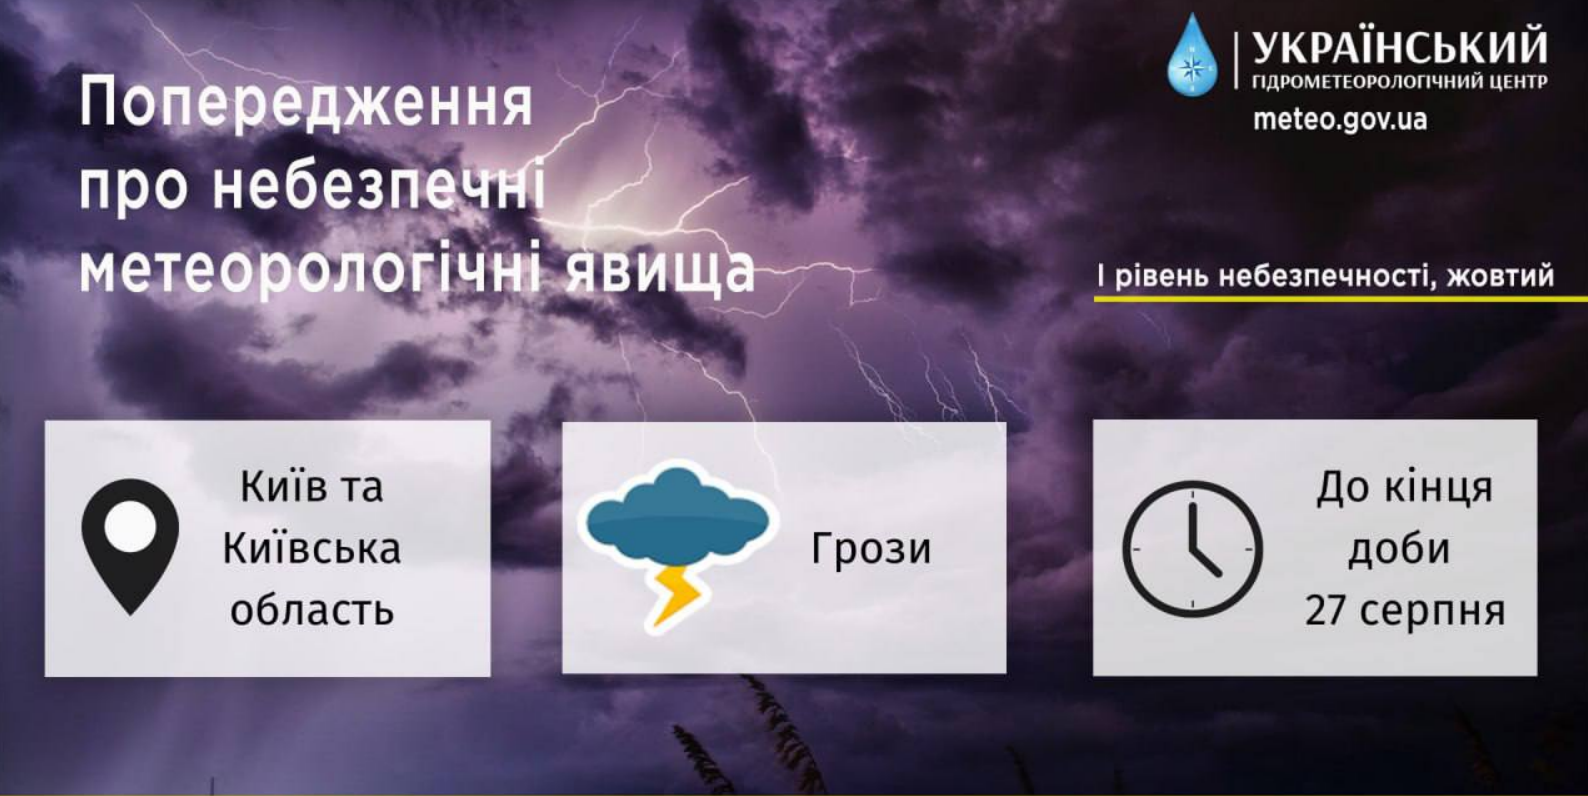 На Київ насувається дощ та гроза — Укргідрометцентр